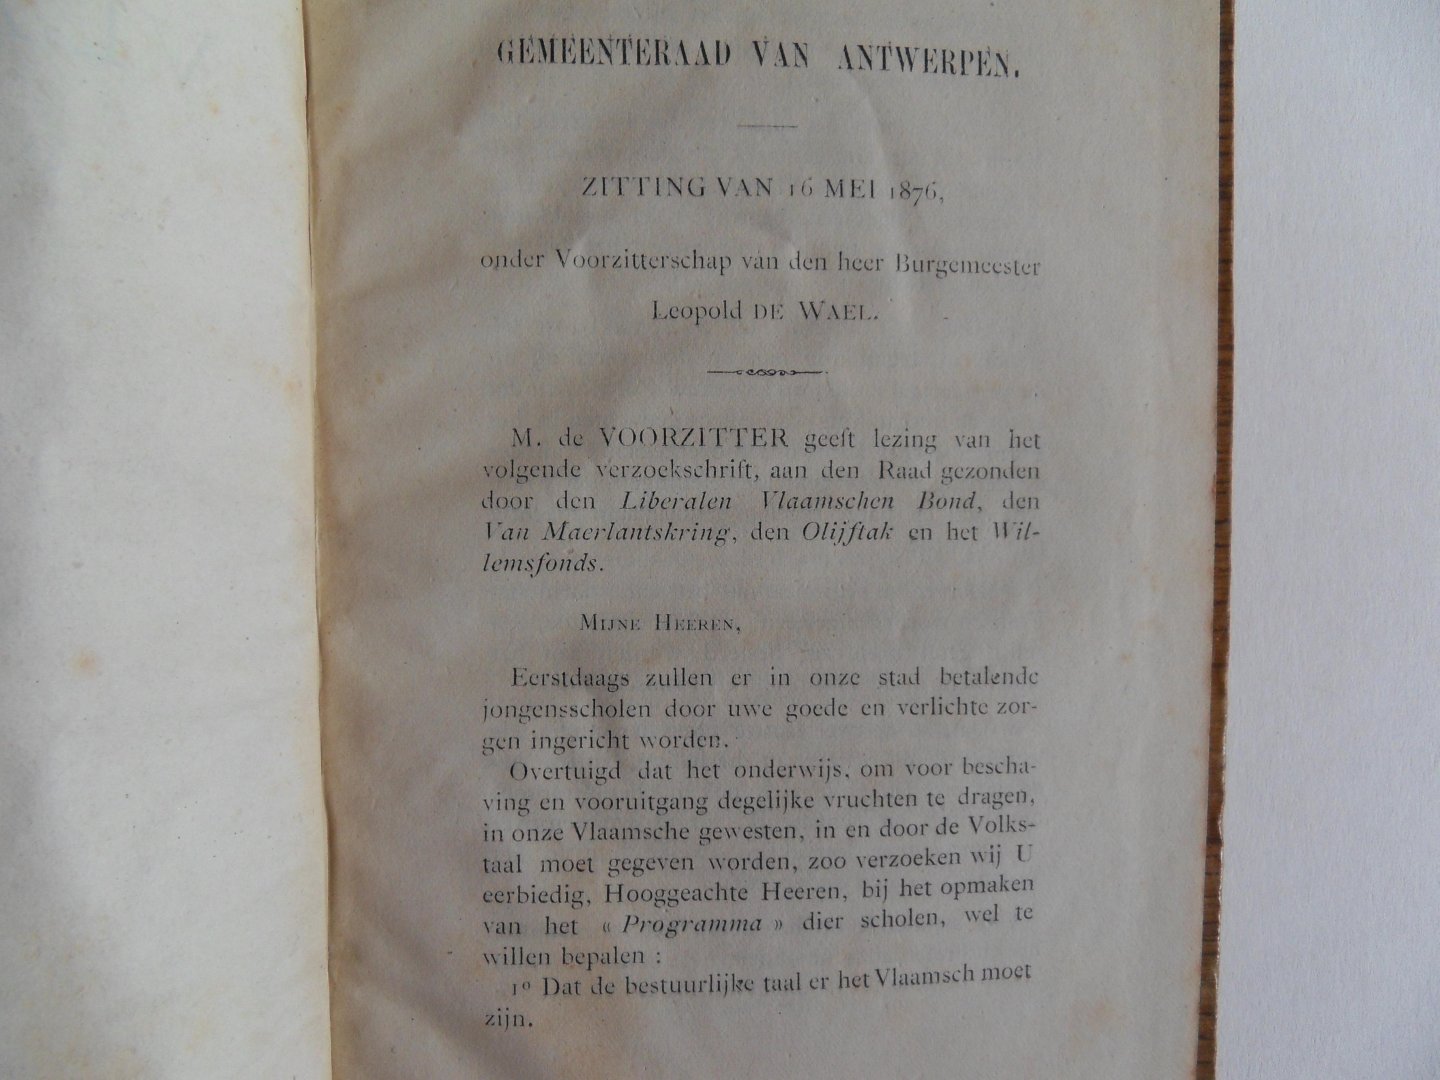 Beers, Jan van. - Het Vlaamsch in het Onderwijs. - Redevoering uitgesproken in zitting van 16 mei 1876 des Gemeenteraads van Antwerpen.